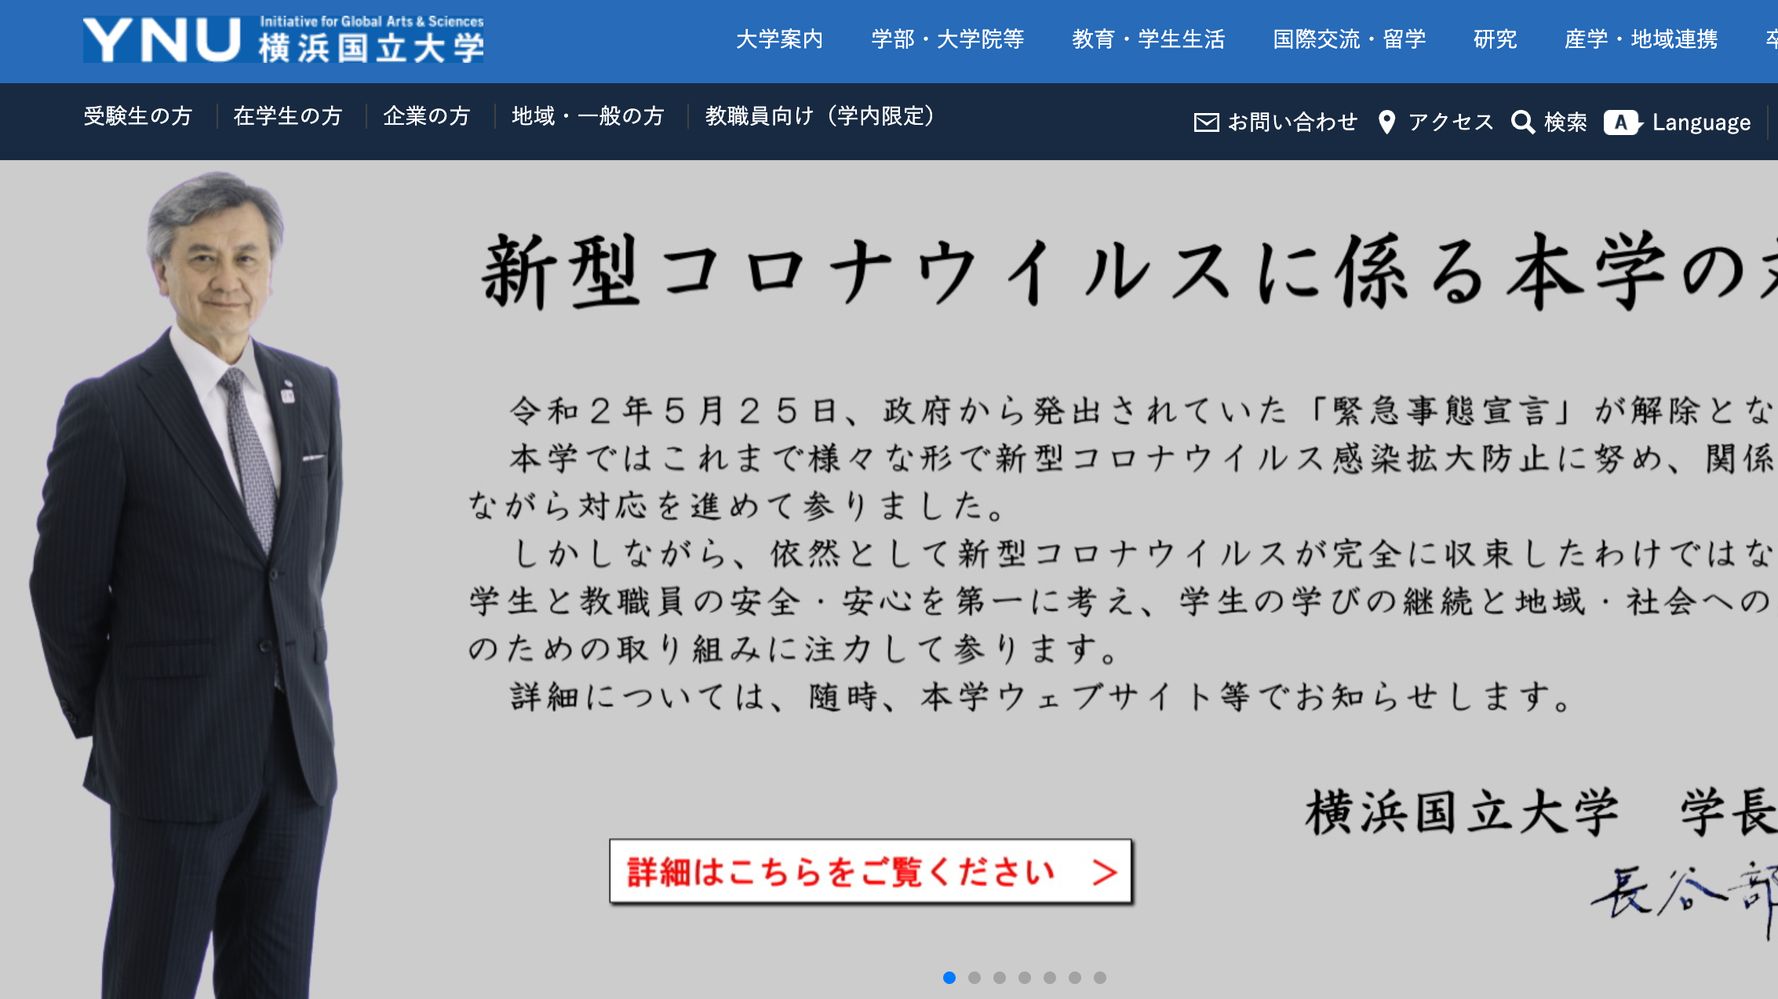 横浜国立大学 二次試験は一部除き行わないと発表 21年度入試 新型コロナ ハフポスト